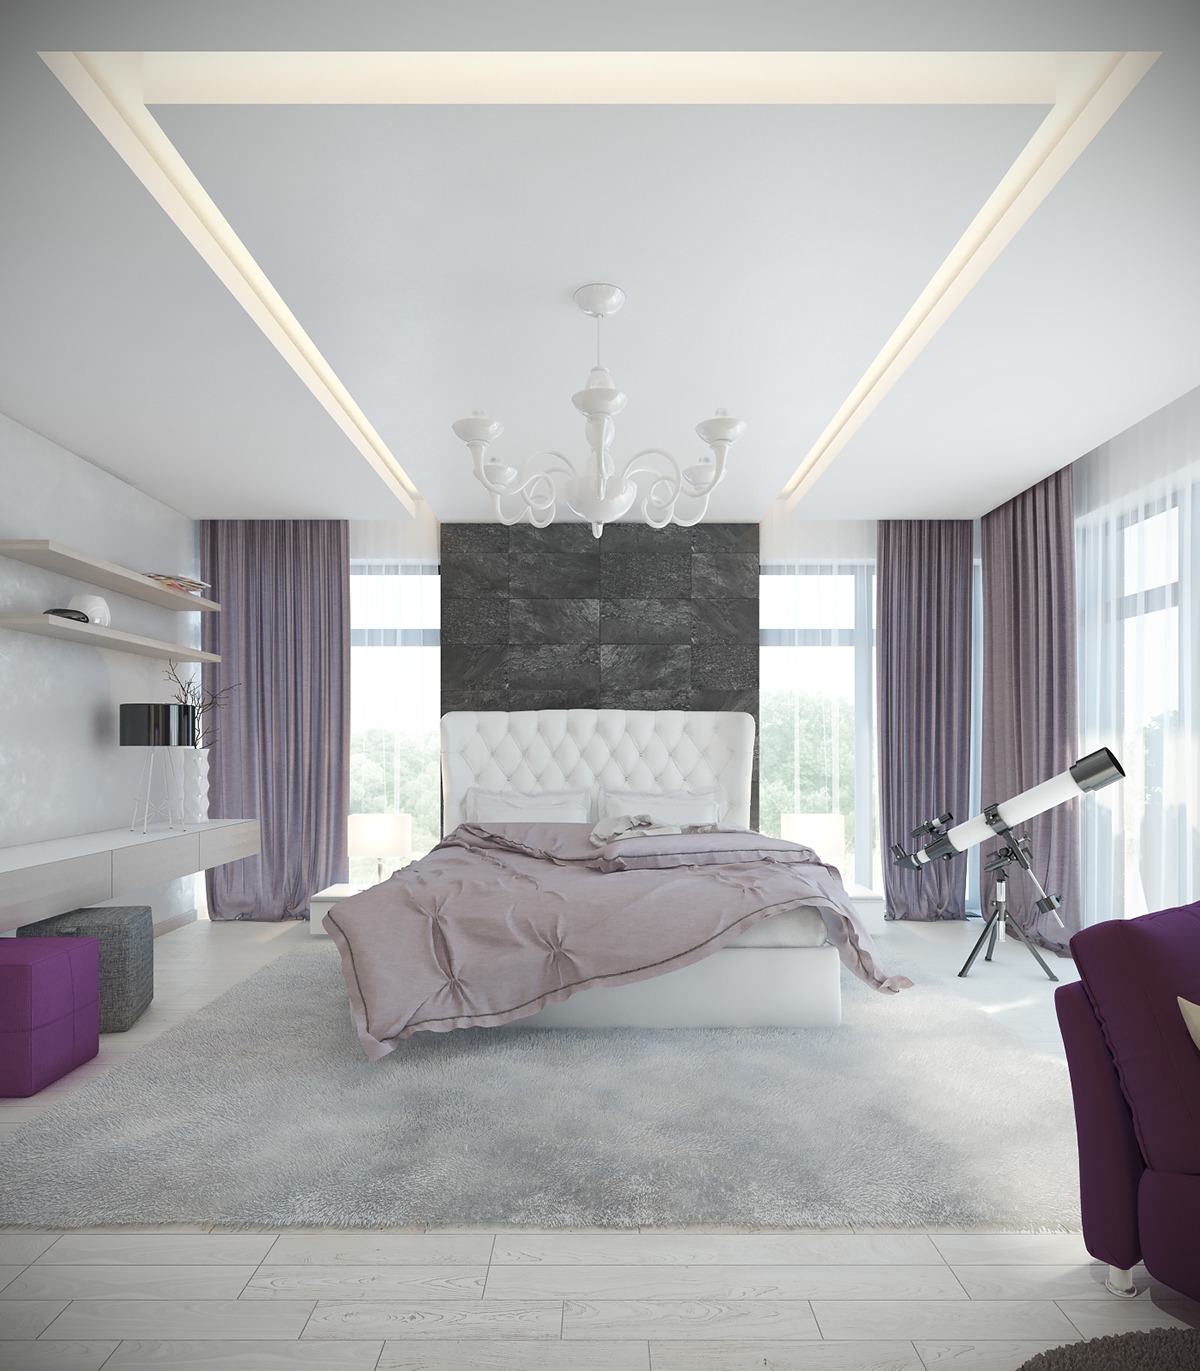 Bedroom design ideas "width =" 1200 "height =" 1371 "srcset =" https://mileray.com/wp-content/uploads/2020/05/1588511413_420_10-Luxury-Bedroom-Themes-and-Design-Ideas.jpg 1200w, https: / / mileray.com/wp-content/uploads/2016/04/light-lavender-bedroom-decor-263x300.jpg 263w, https://mileray.com/wp-content/uploads/2016/04/light-lavender- bedroom -decor-768x877.jpg 768w, https://mileray.com/wp-content/uploads/2016/04/light-lavender-bedroom-decor-896x1024.jpg 896w, https://mileray.com/wp- content /uploads/2016/04/light-lavender-bedroom-decor-696x795.jpg 696w, https://mileray.com/wp-content/uploads/2016/04/light-lavender-bedroom-decor-1068x1220.jpg 1068w, https://mileray.com/wp-content/uploads/2016/04/light-lavender-bedroom-decor-368x420.jpg 368w "Sizes =" (maximum width: 1200px) 100vw, 1200px